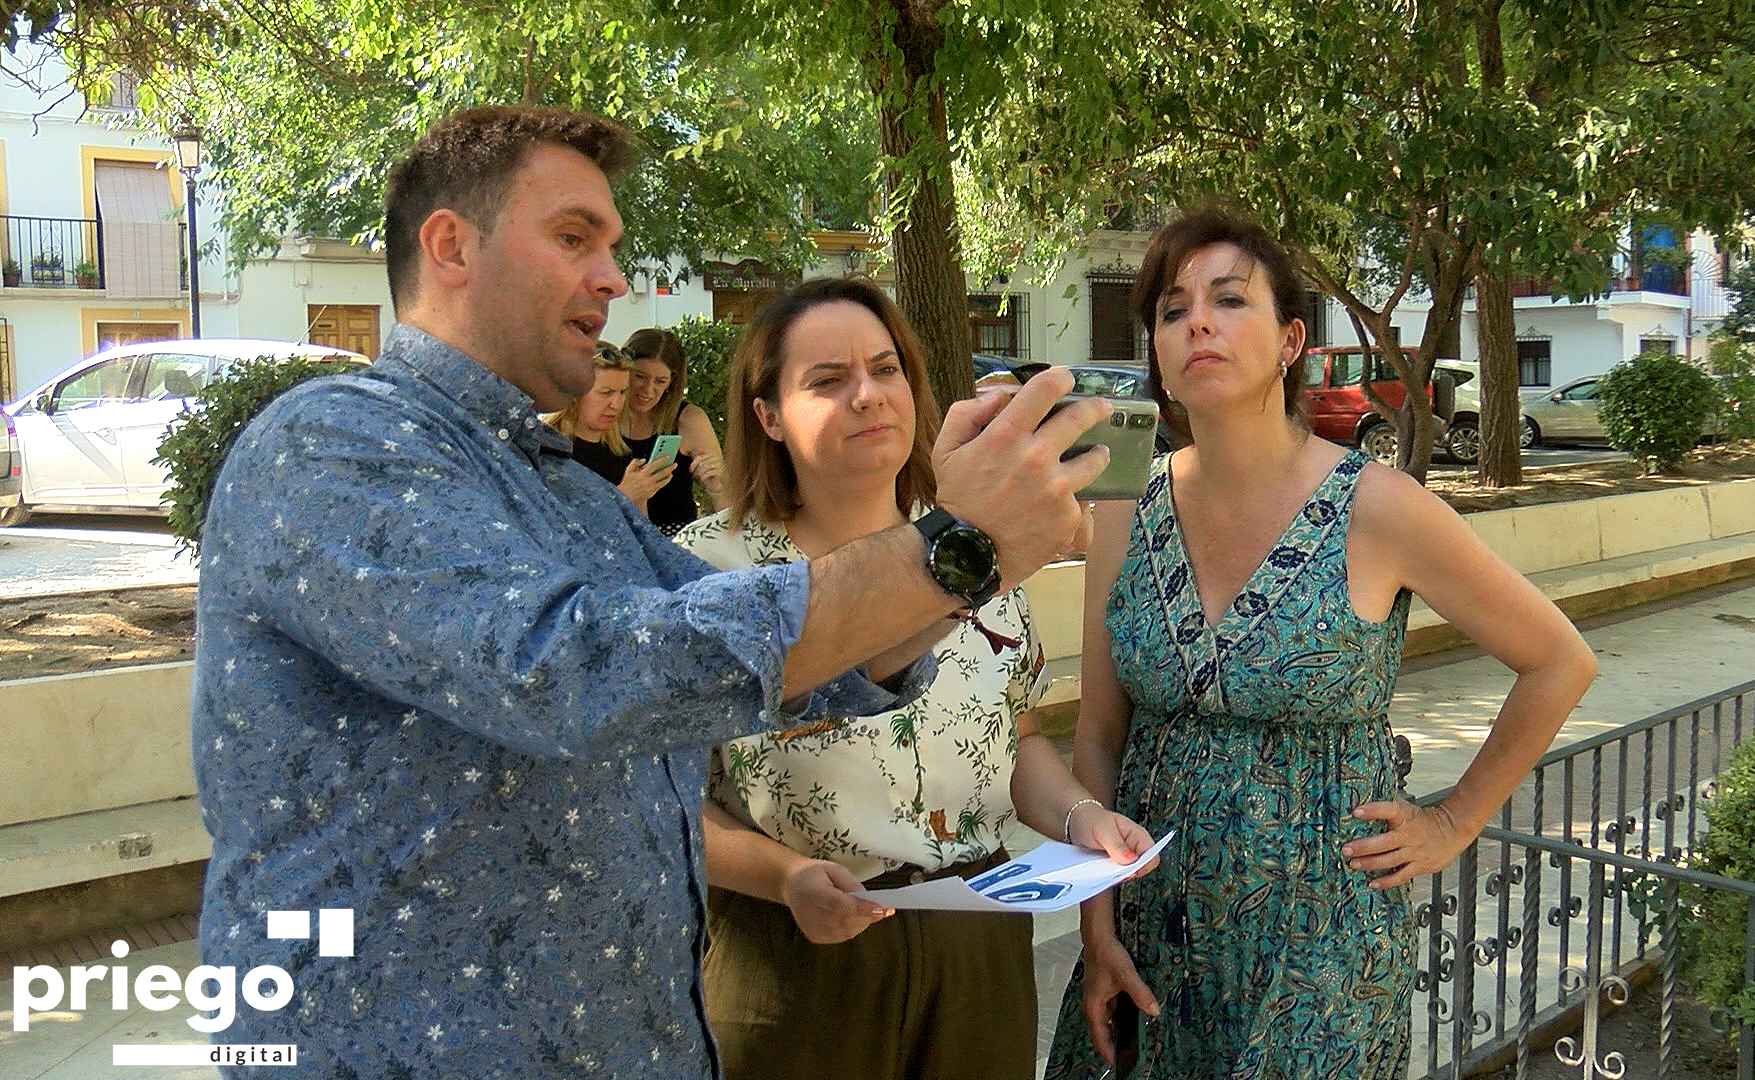 Franco, Ramírez y Ceballos probando el nuevo recurso turístico.